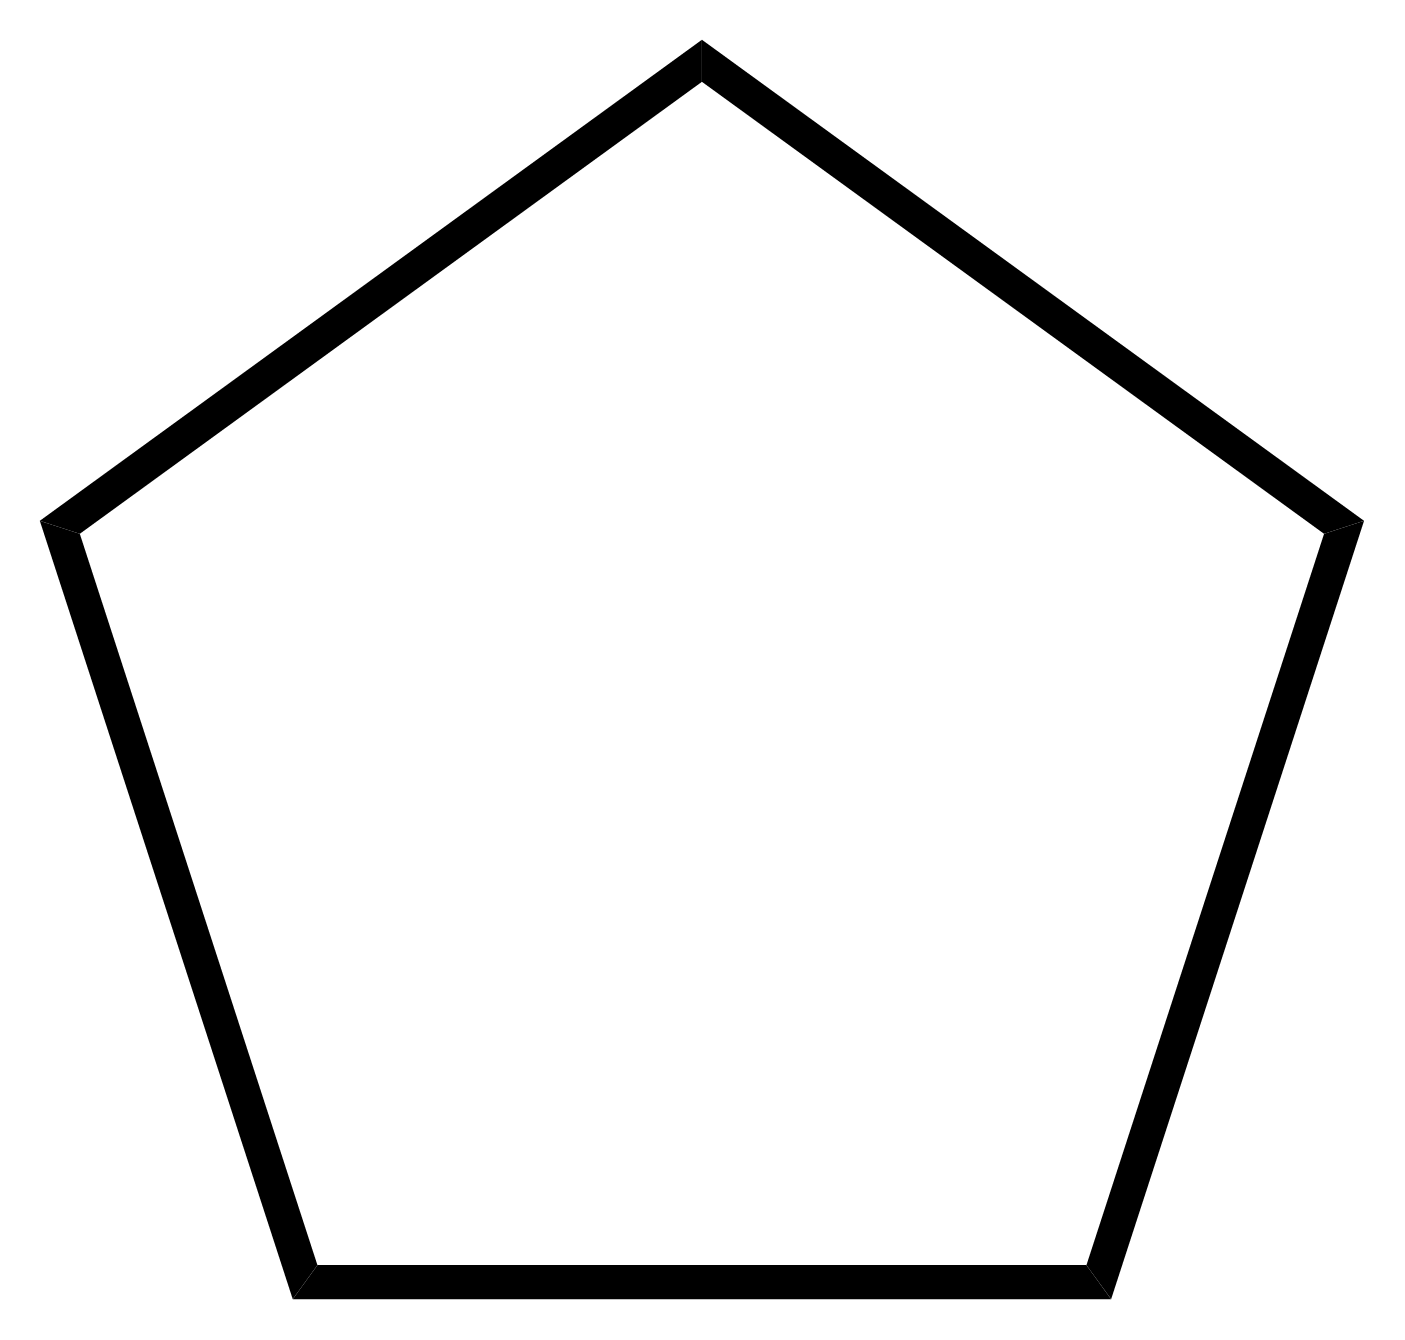 Cyclopentane - Paramètre chimique